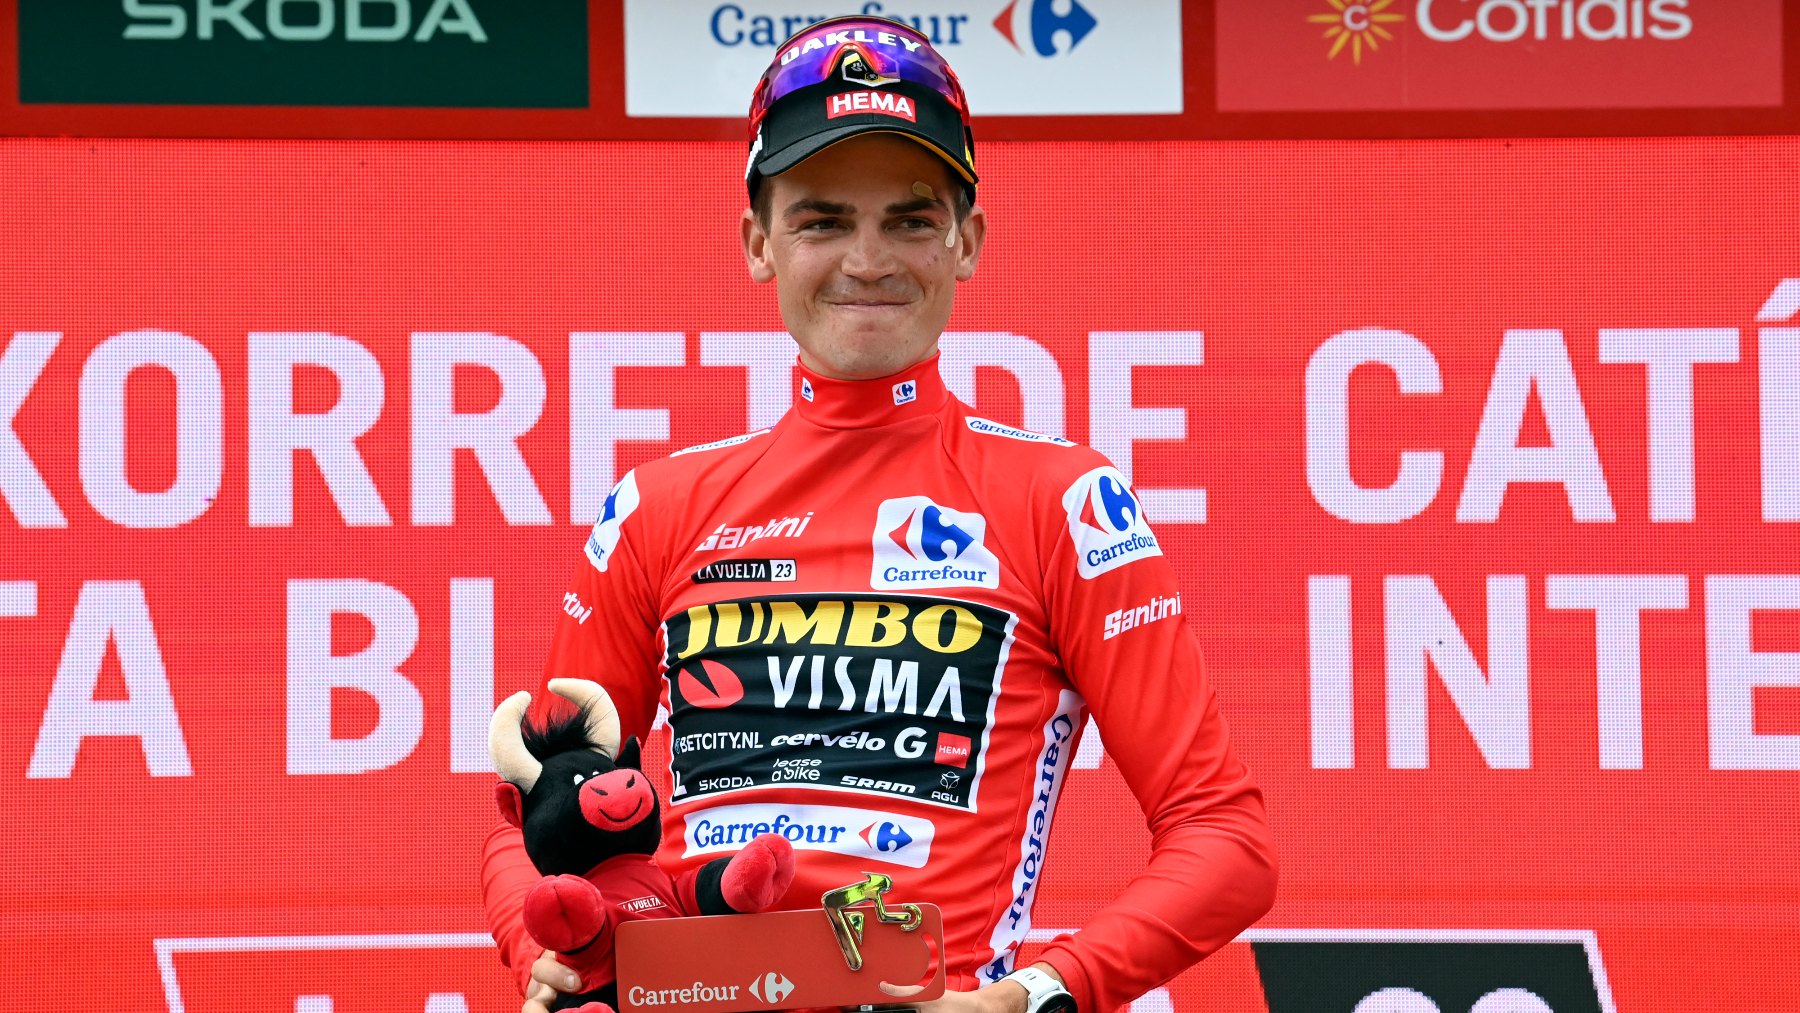 Sepp Kuss, en el podio como nuevo líder de la Vuelta. (AFP)